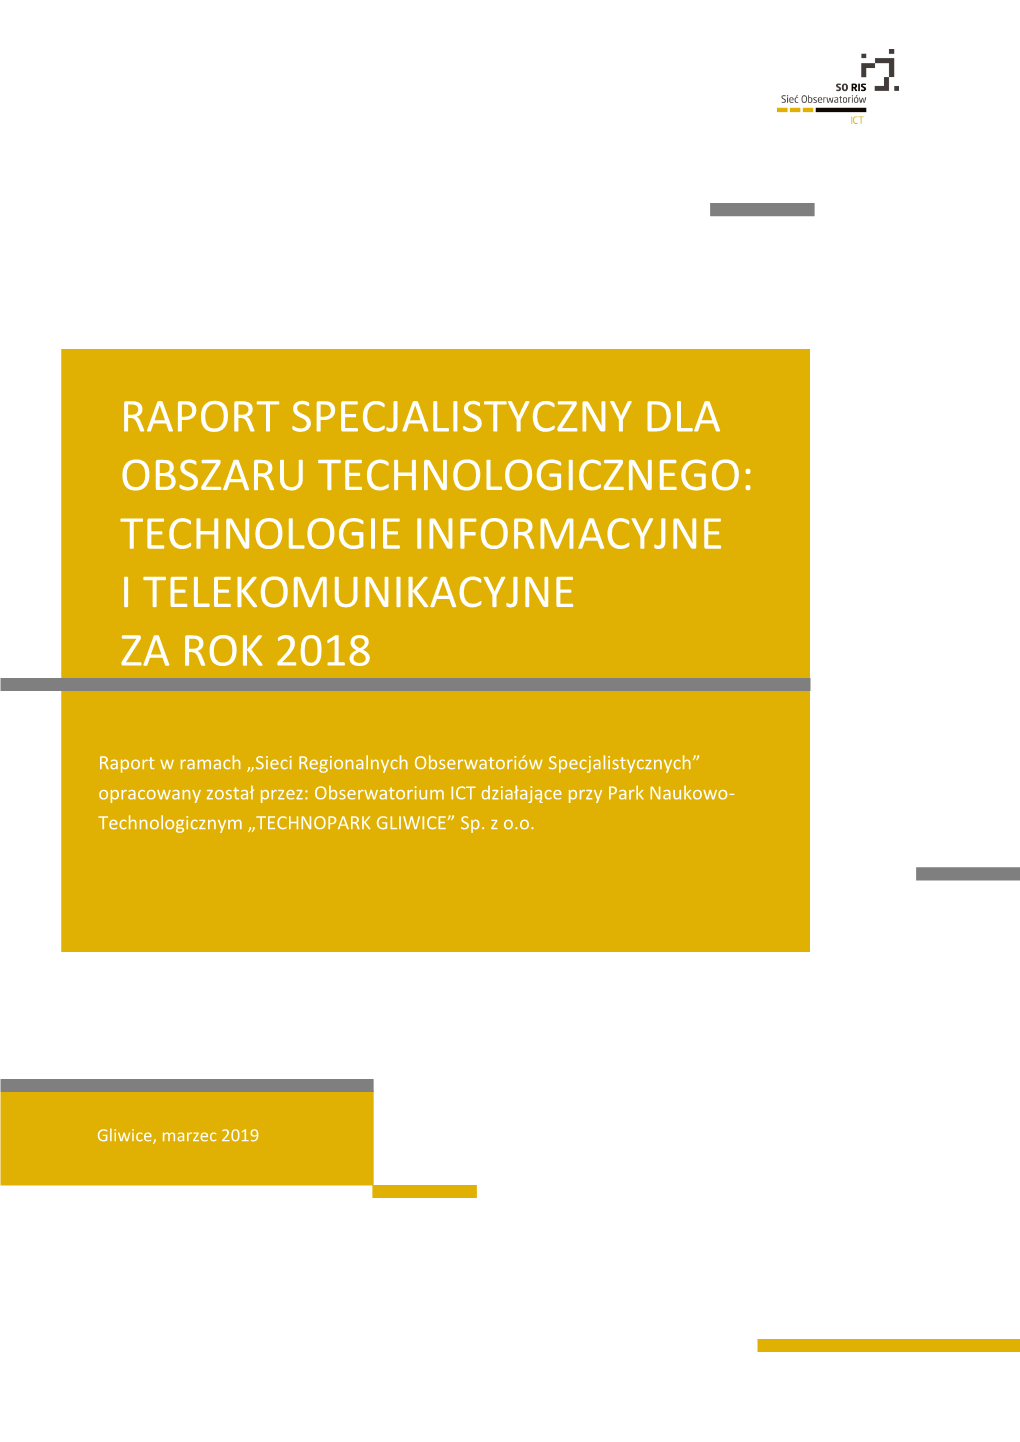 Raport Specjalistyczny Dla Obszaru Technologicznego: Technologie Informacyjne I Telekomunikacyjne Za Rok 2018